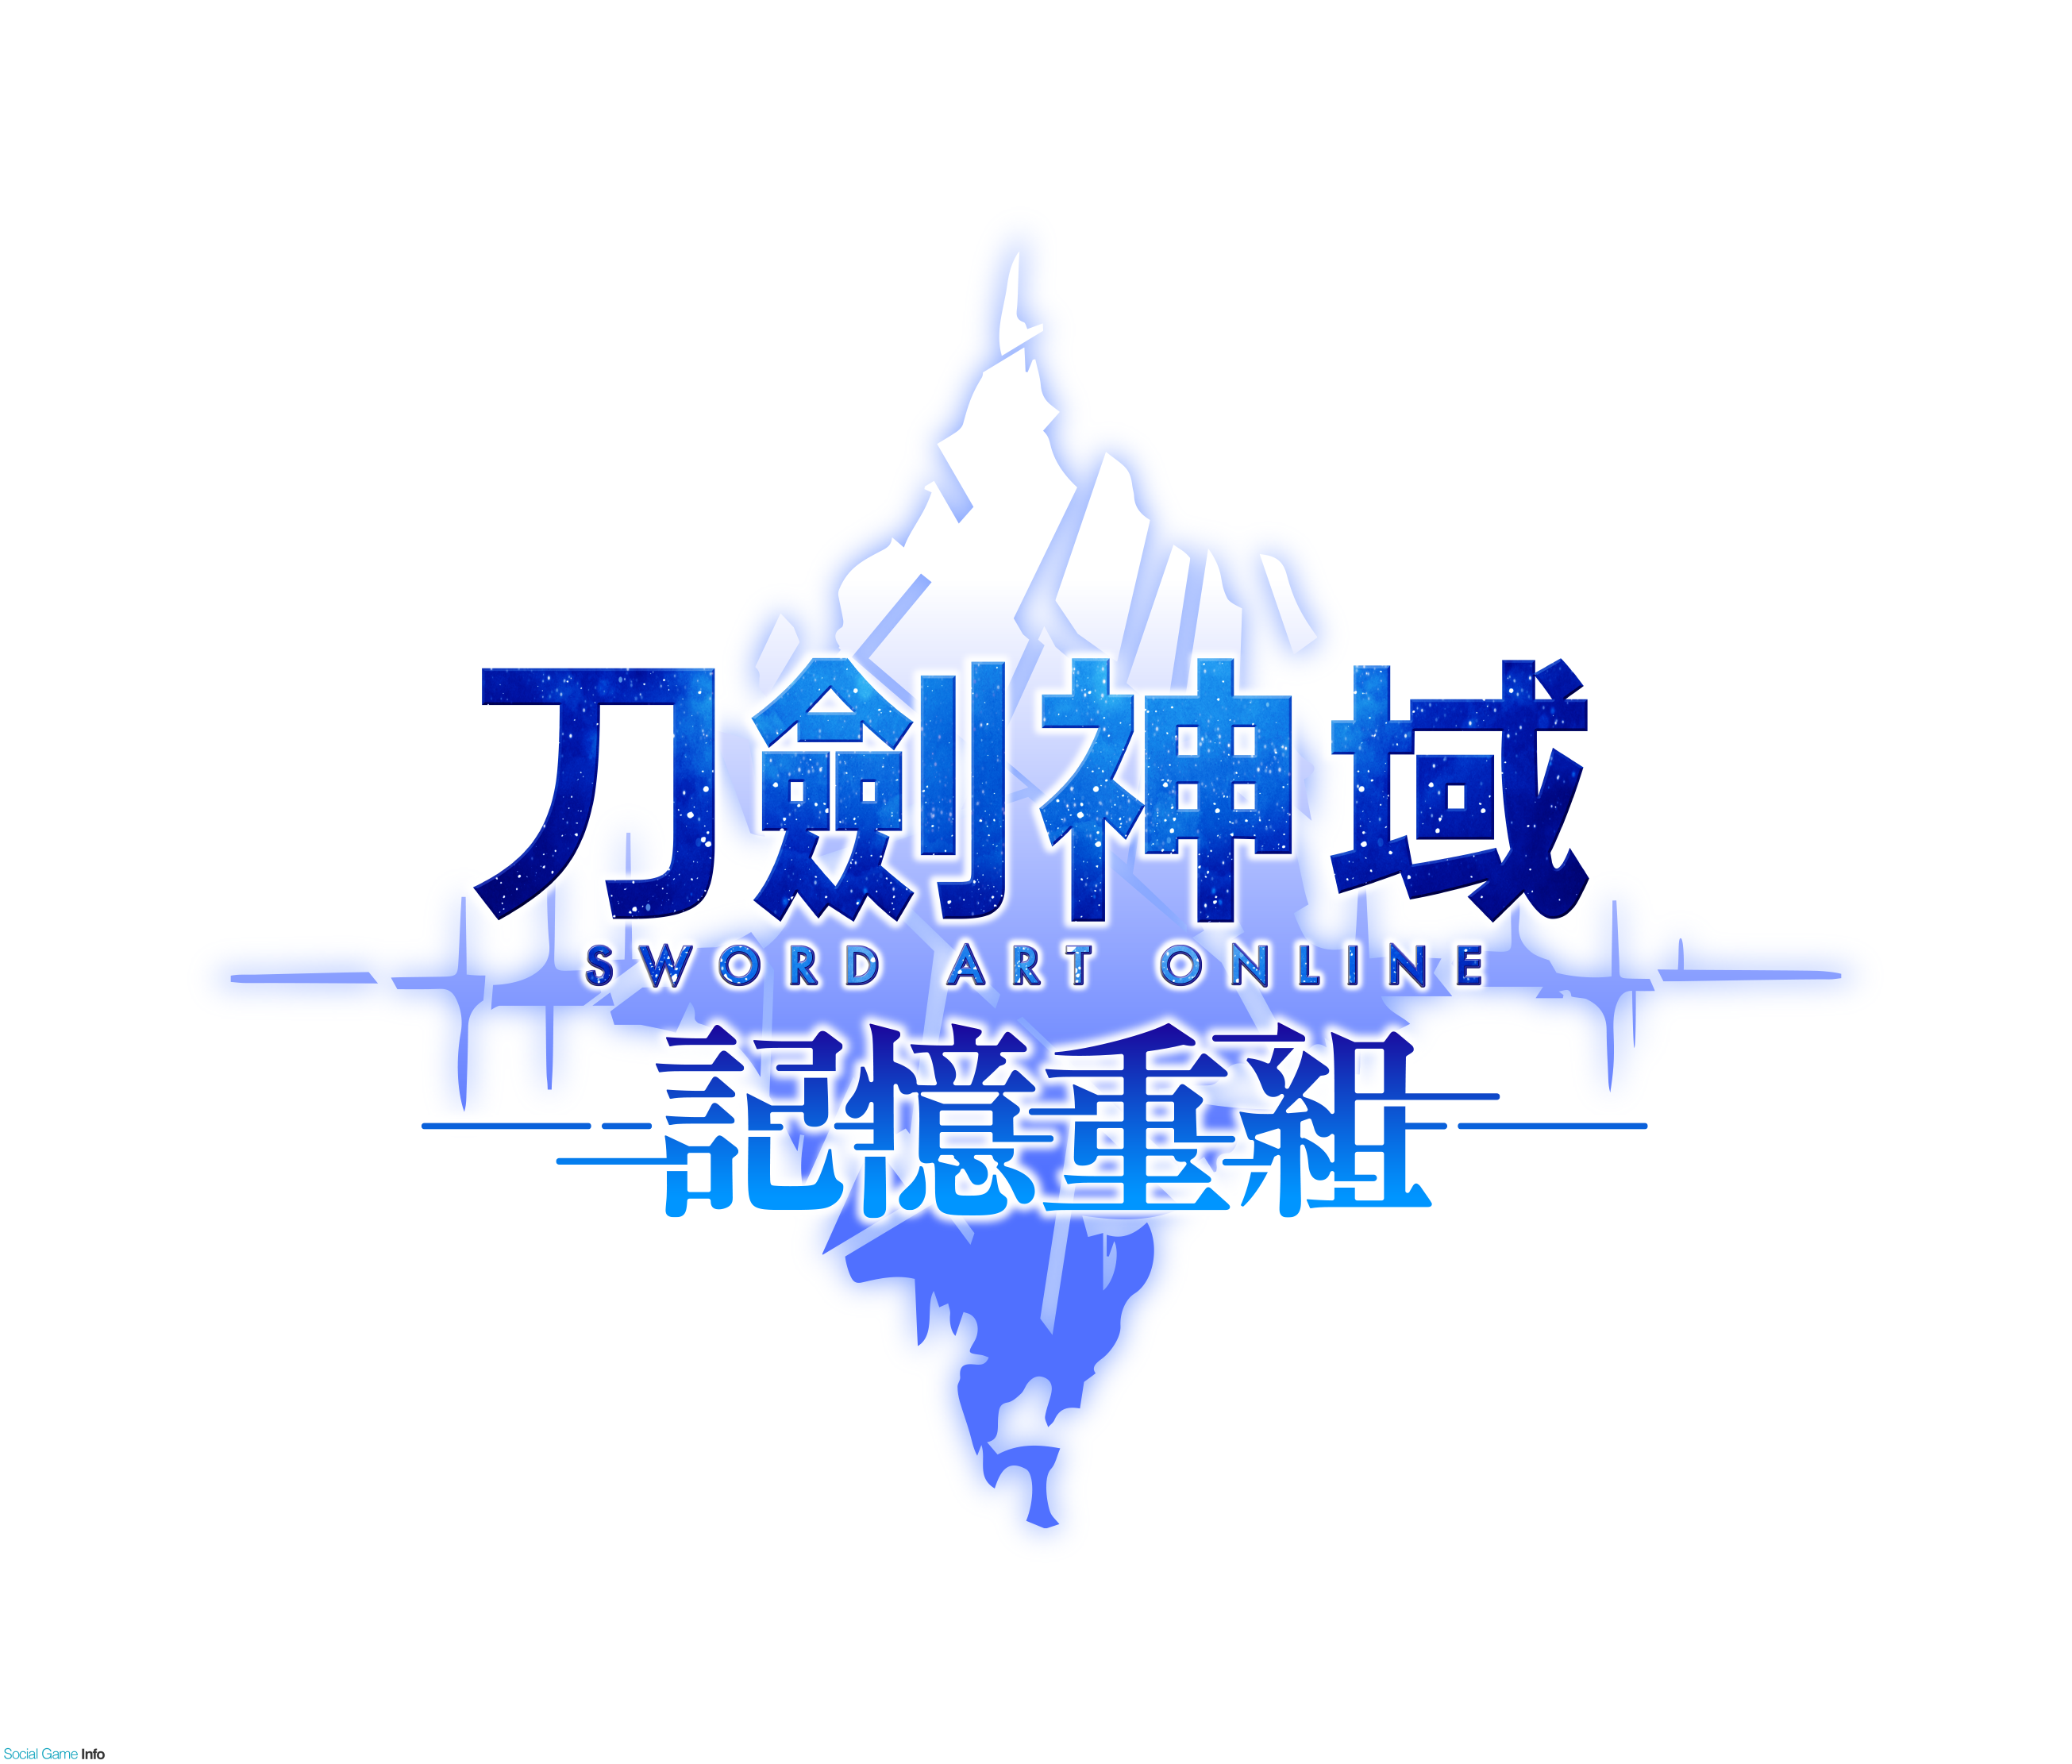 バンナム ソードアート オンライン メモリー デフラグ の繫体中文版を台湾 香港で配信決定 国内含め世界16ヶ国での展開に Social Game Info